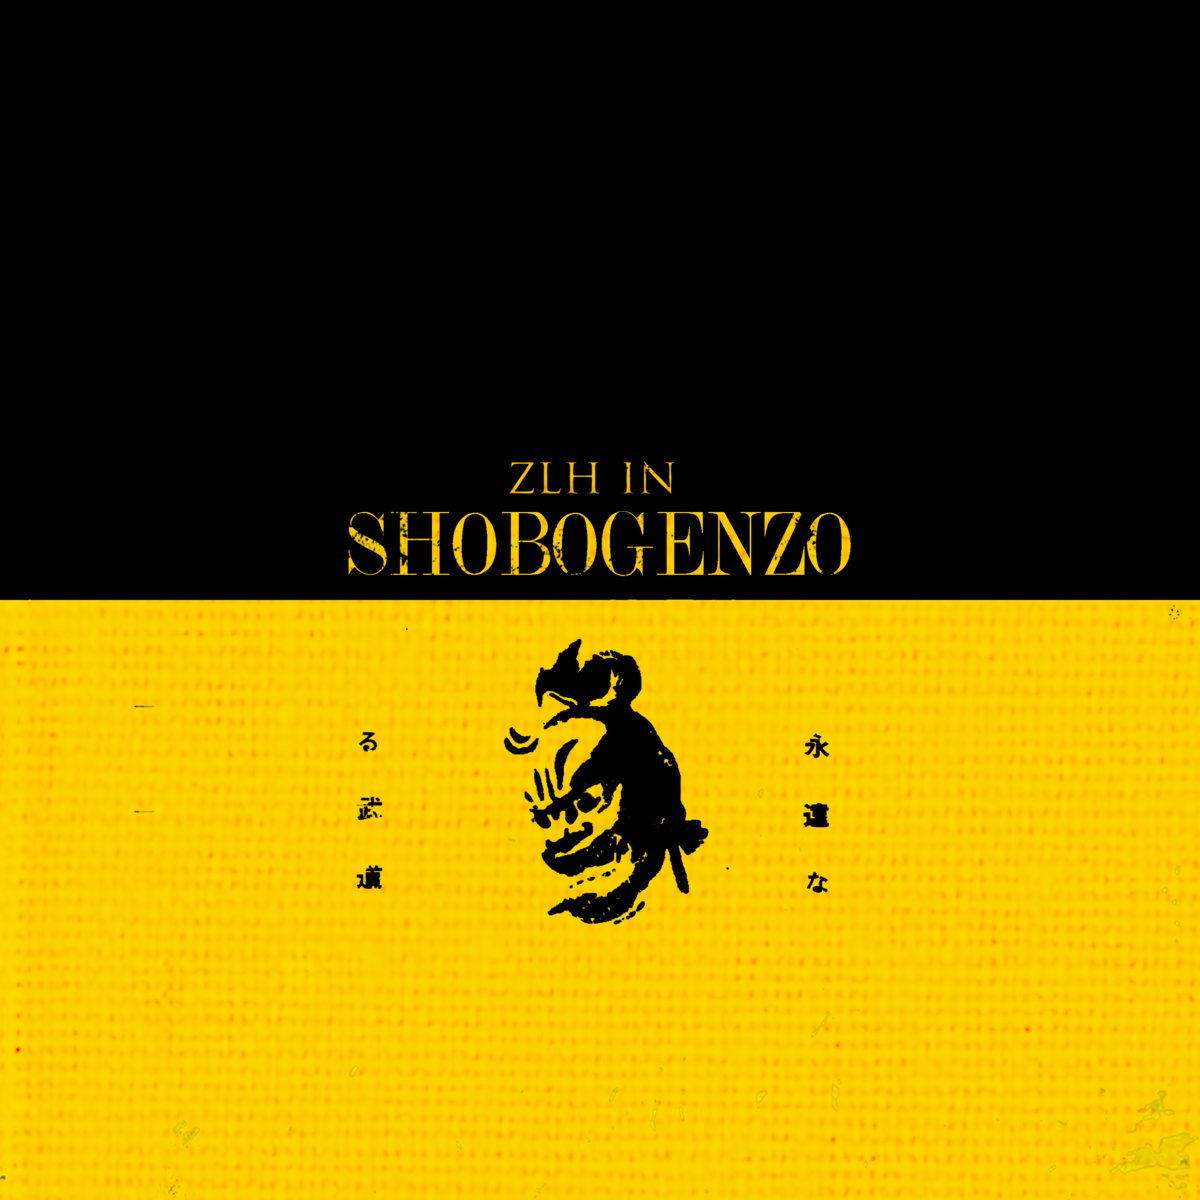 Zlh_in_shobogenzo